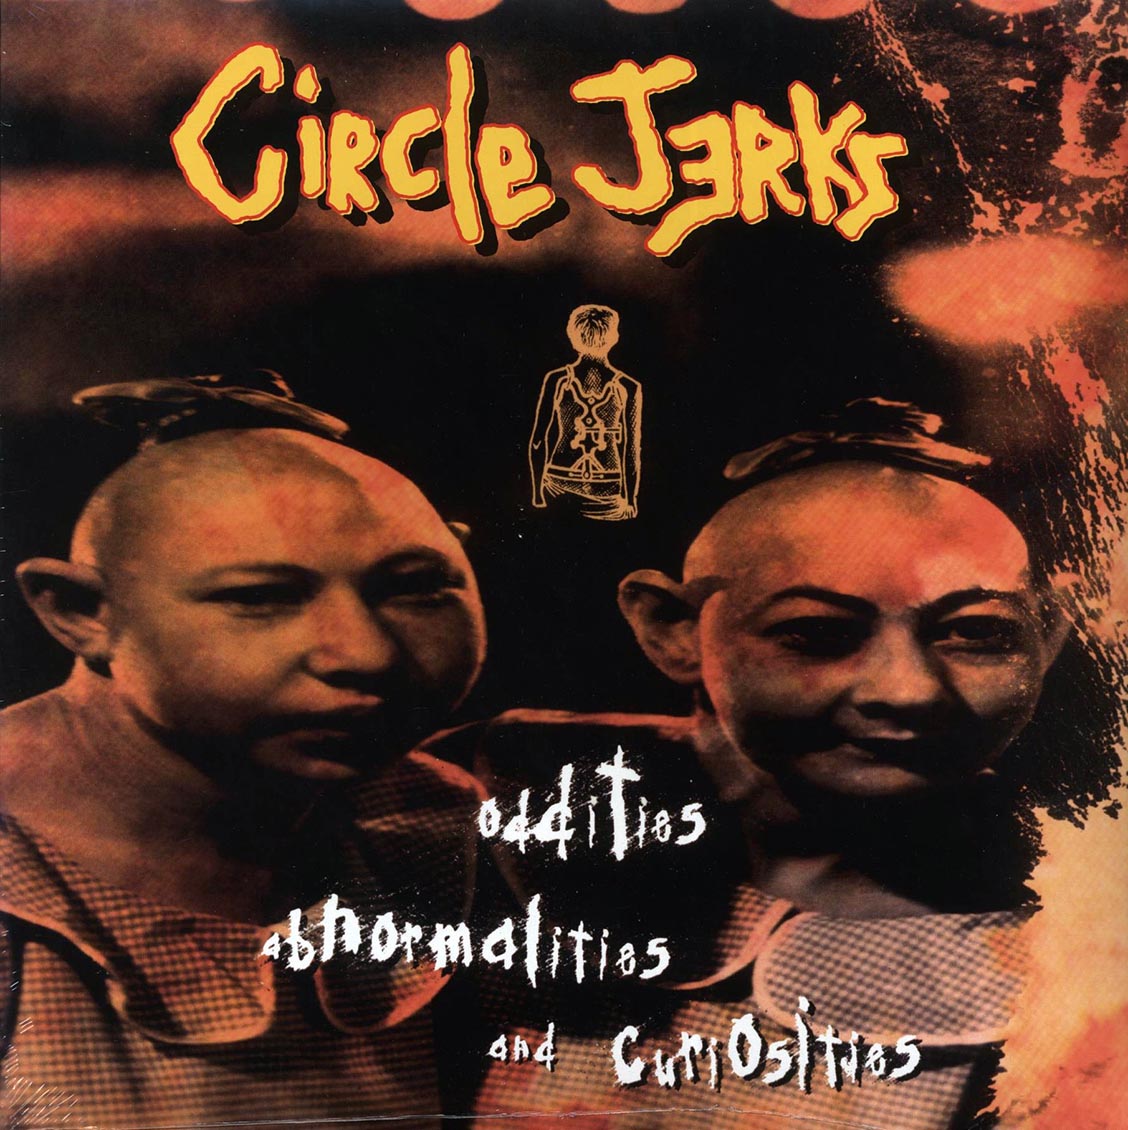 Circle Jerks - Oddities, Abnormalities & Curiousities - Vinyl LP